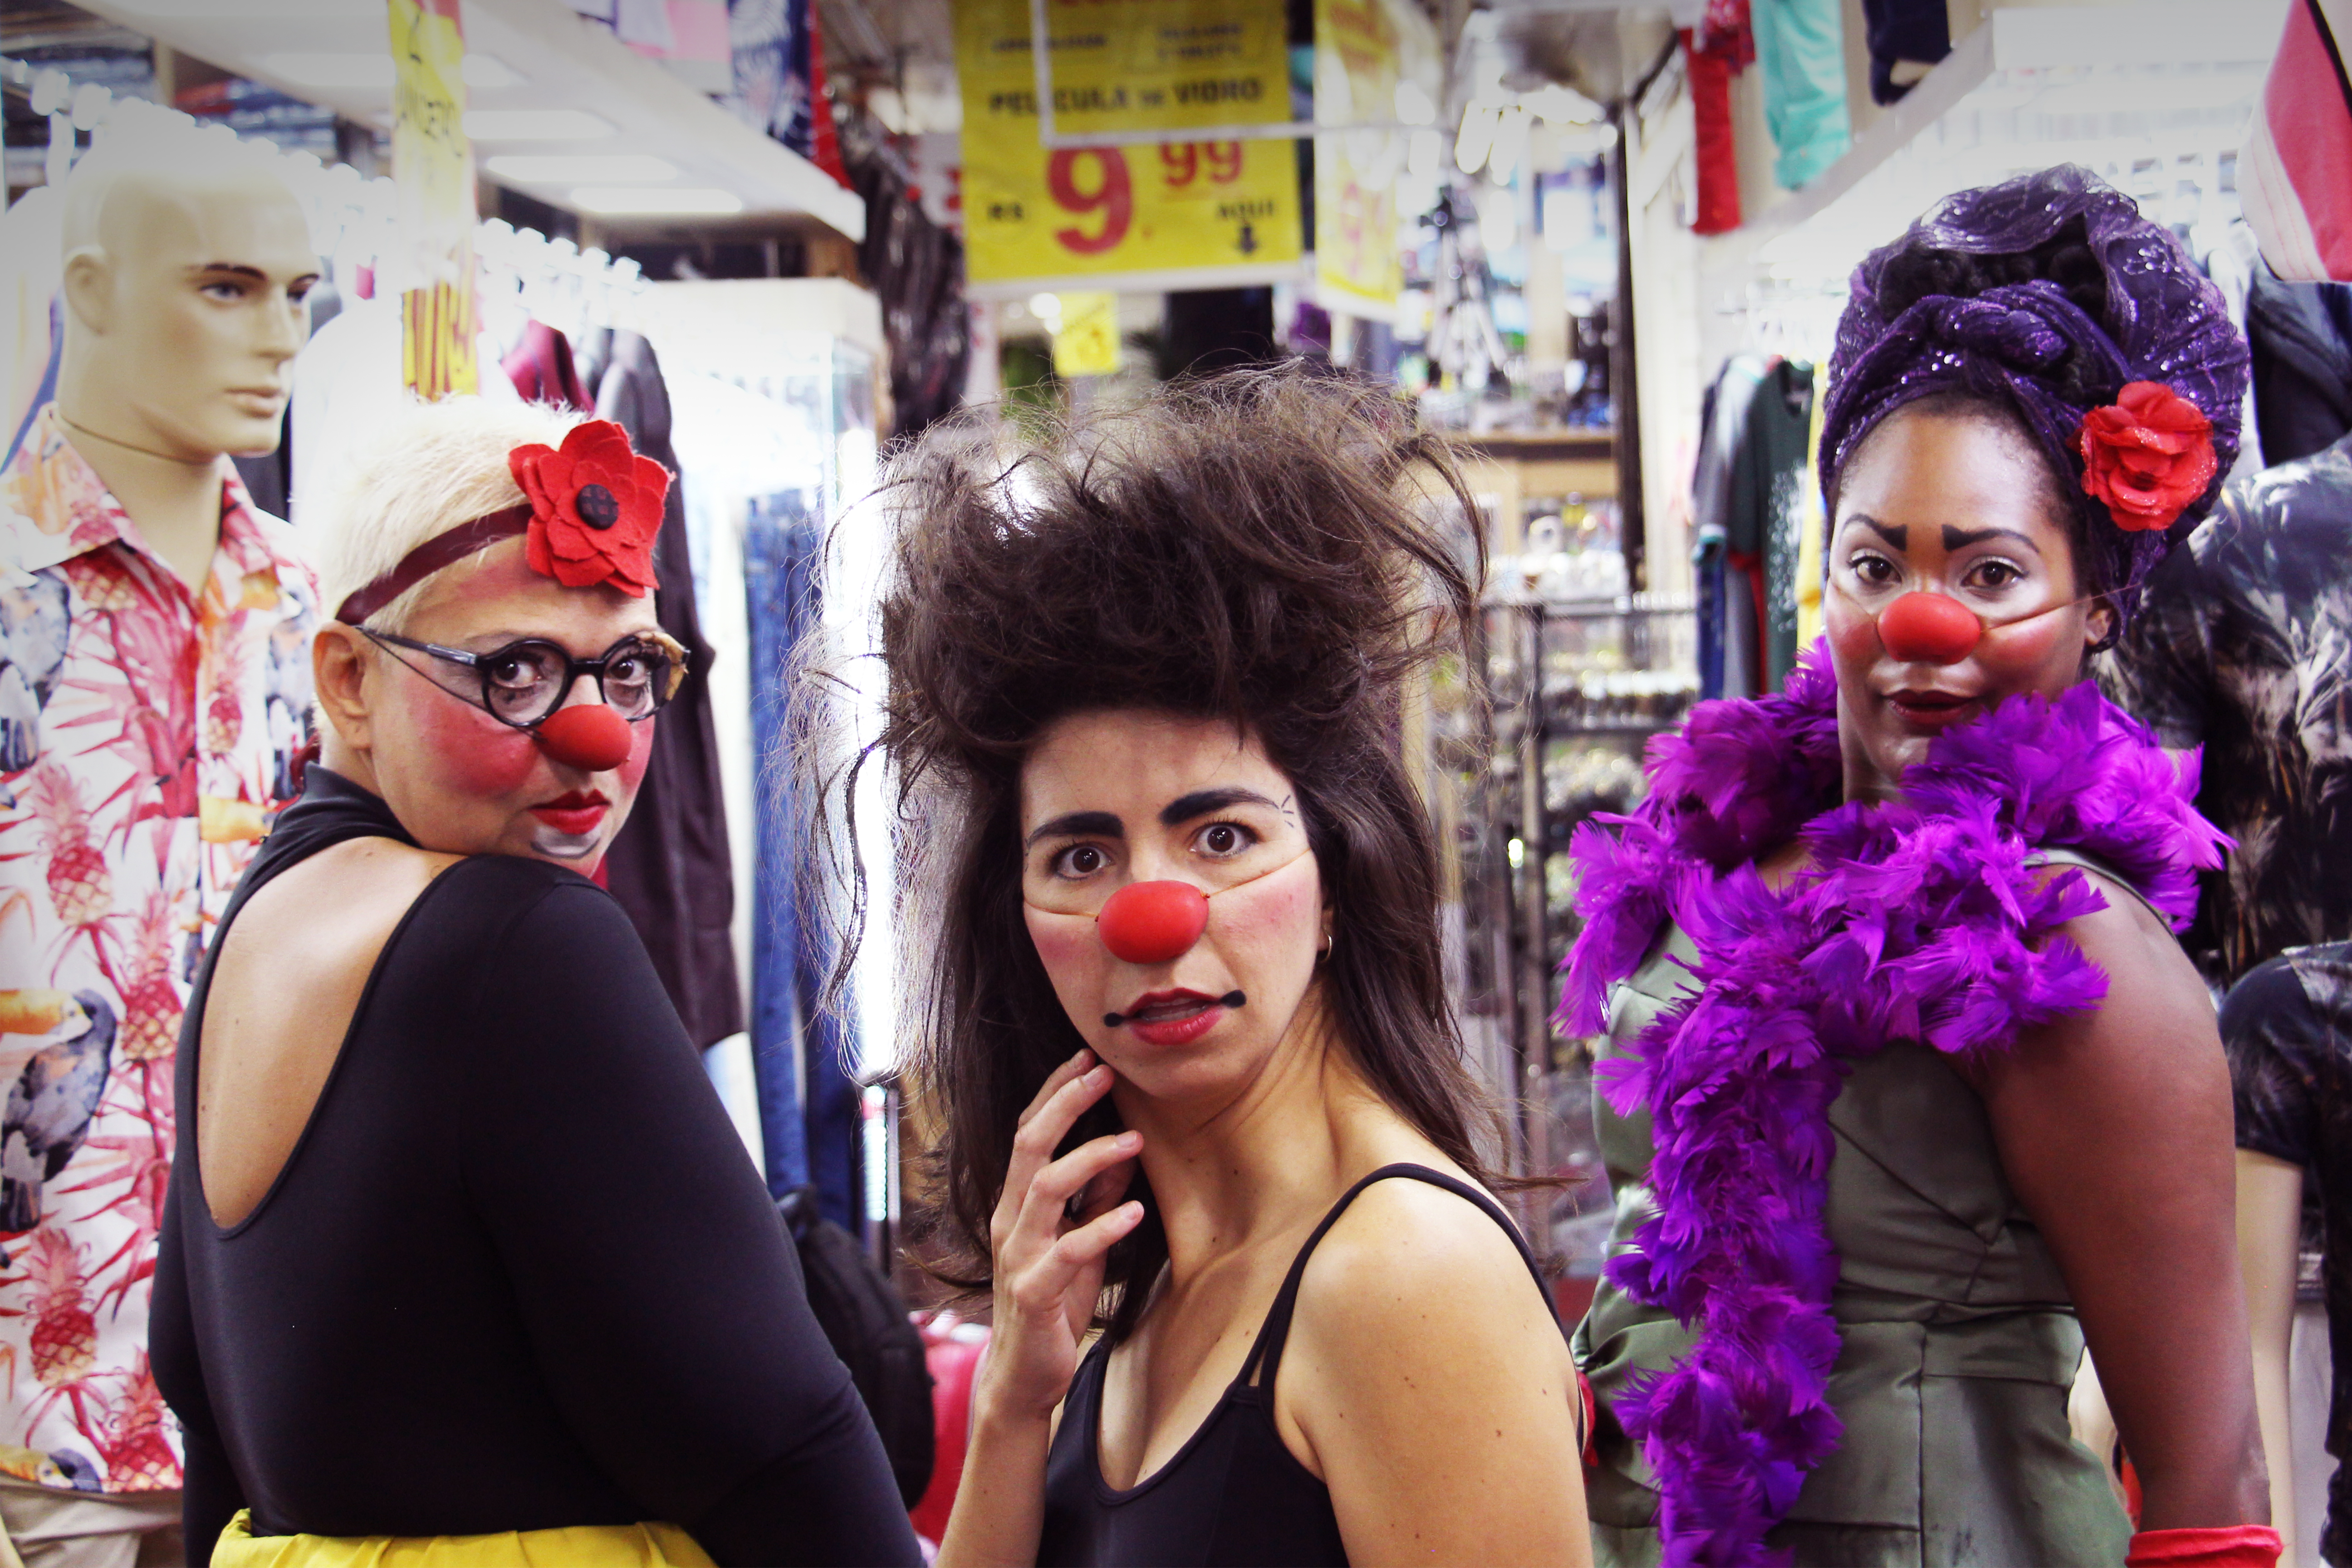 Palco Giratório apresenta “Femi-Clown” no Theatro 4 de Setembro em Teresina